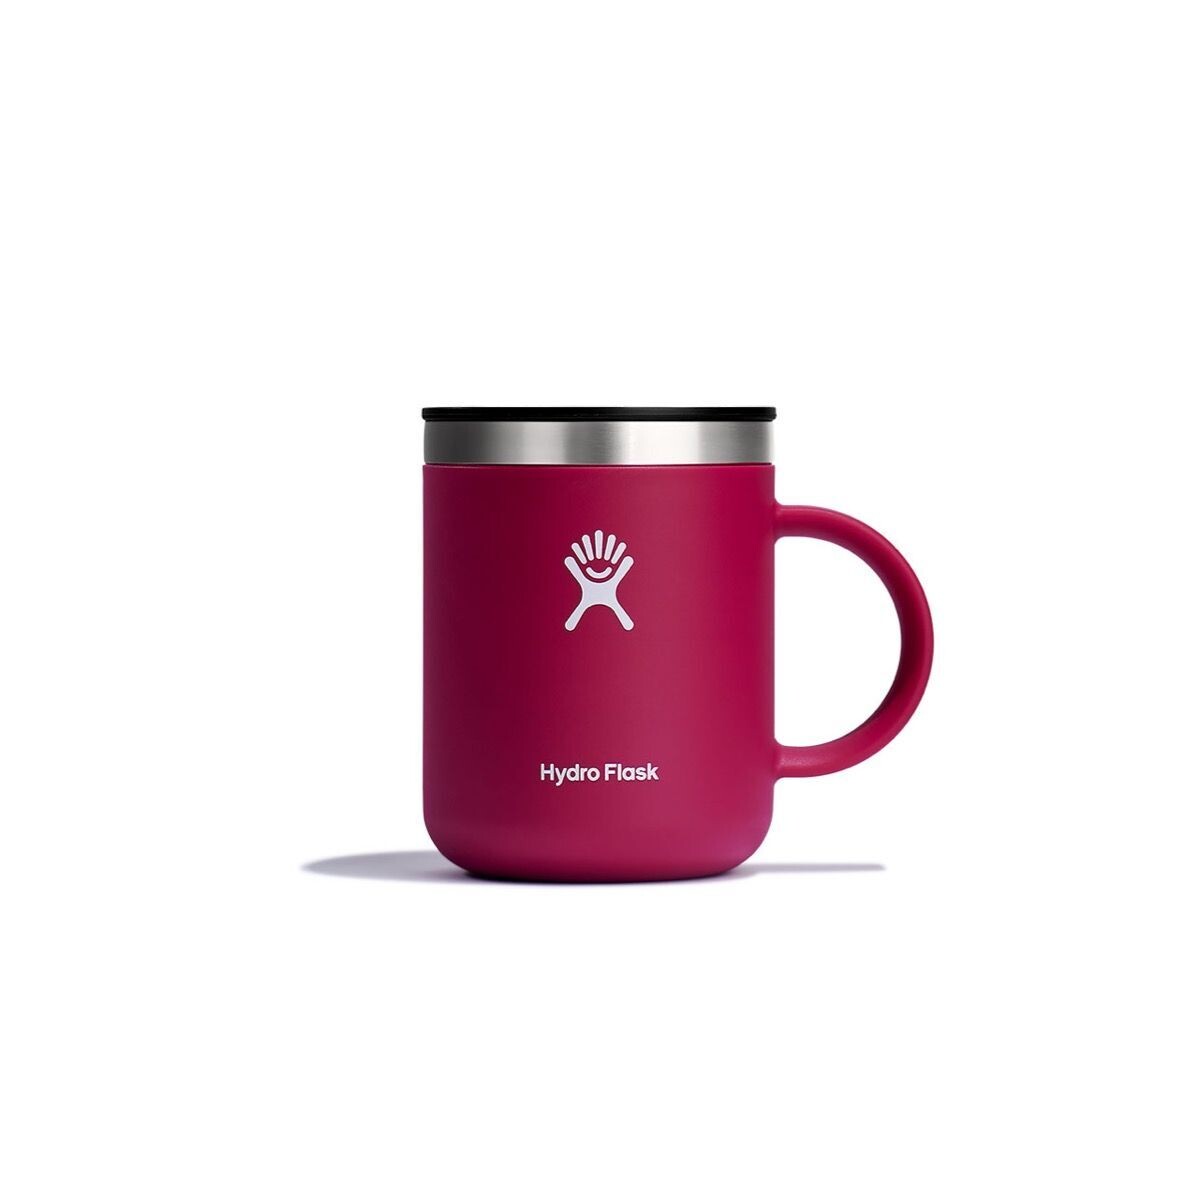 Hydro Flask 12 oz Coffee Mug- Snapper